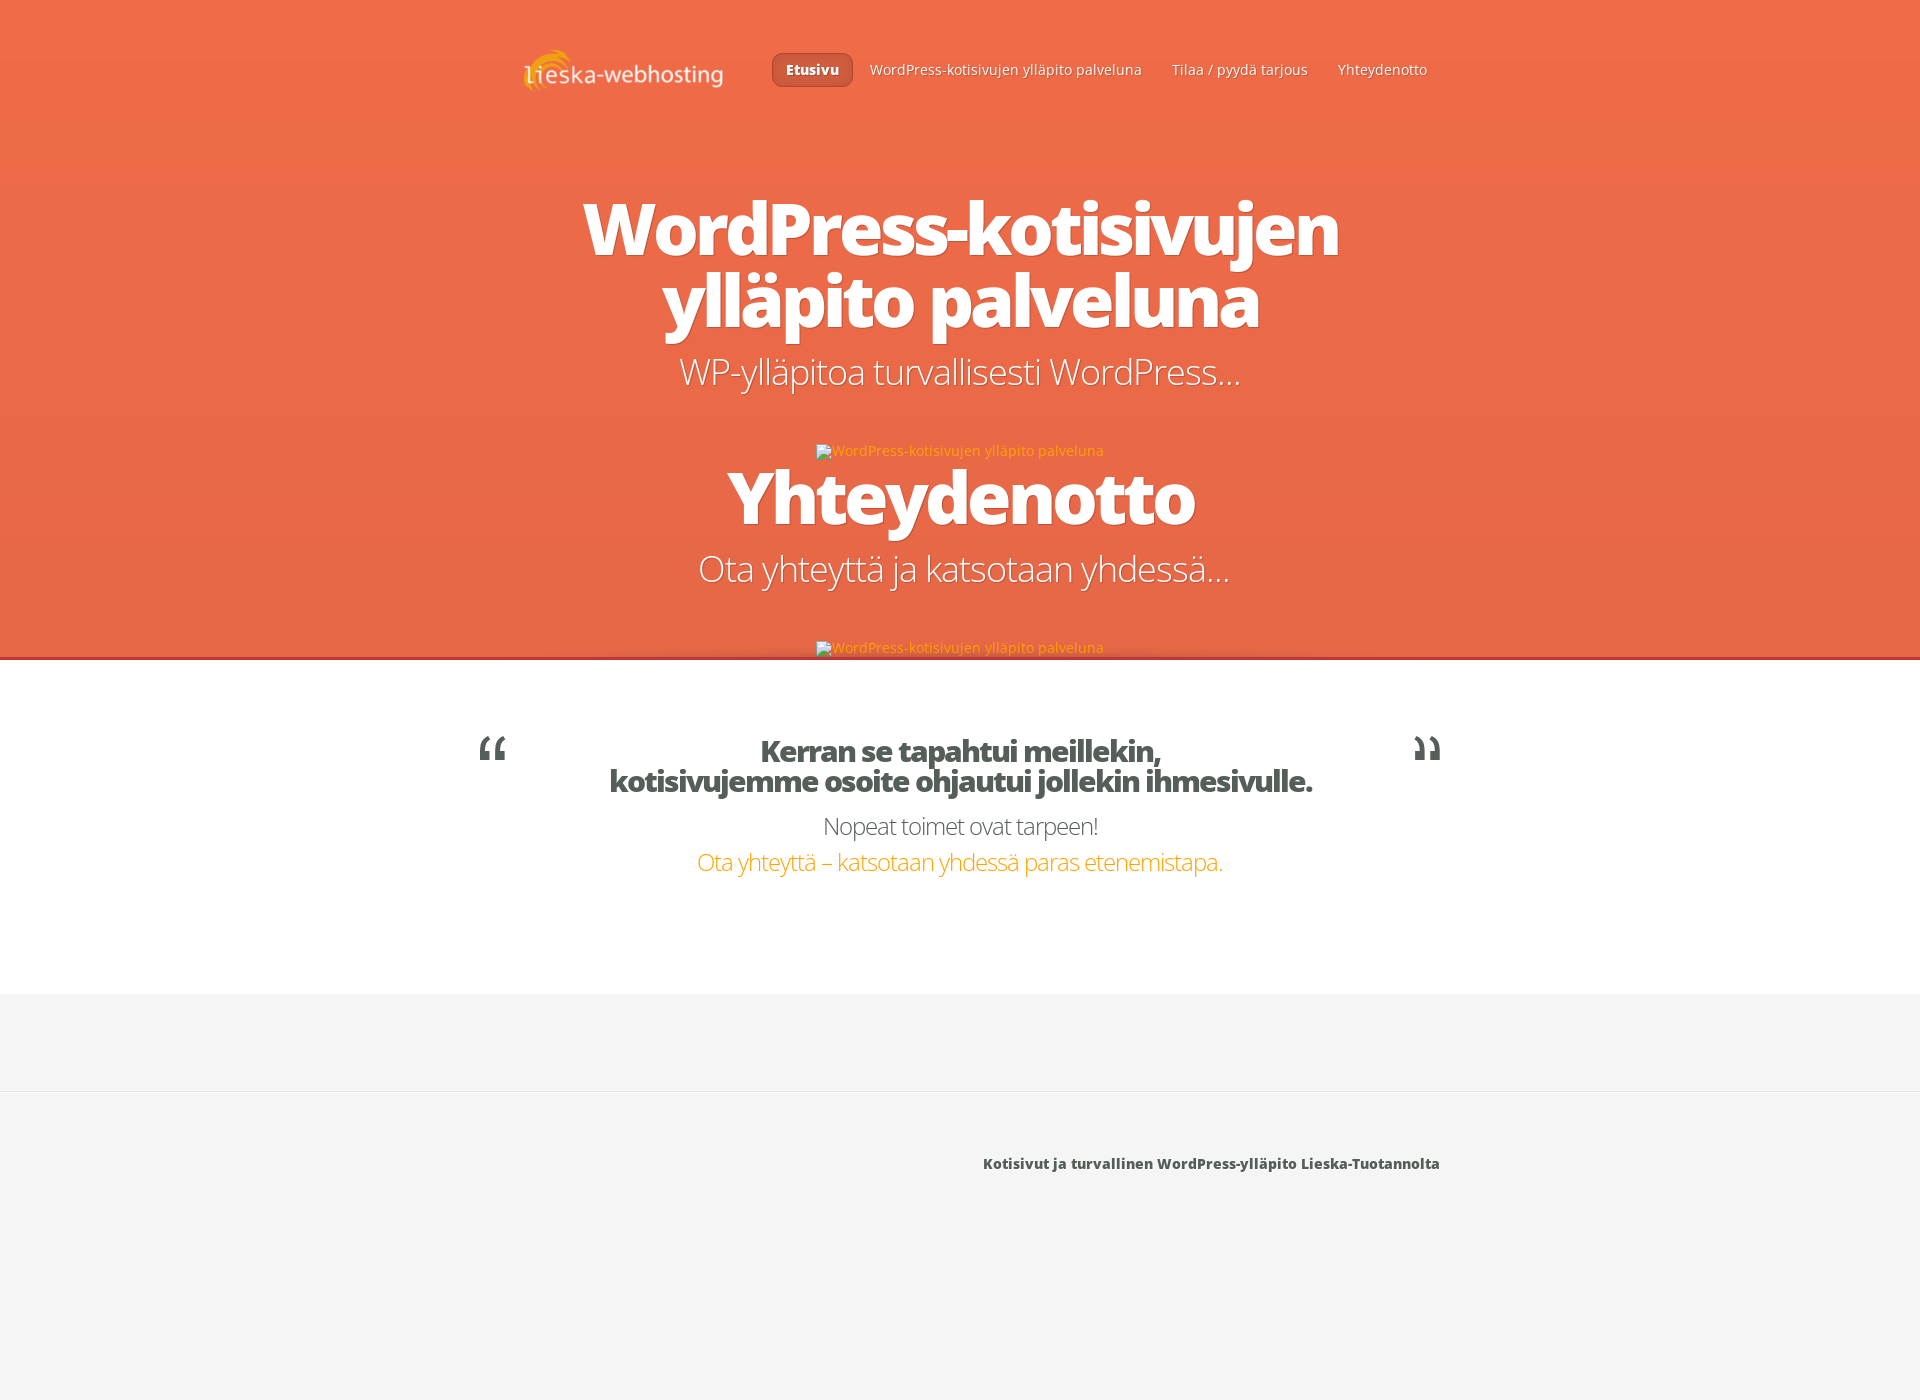 Screenshot for wp-yllapitopalveluna.fi